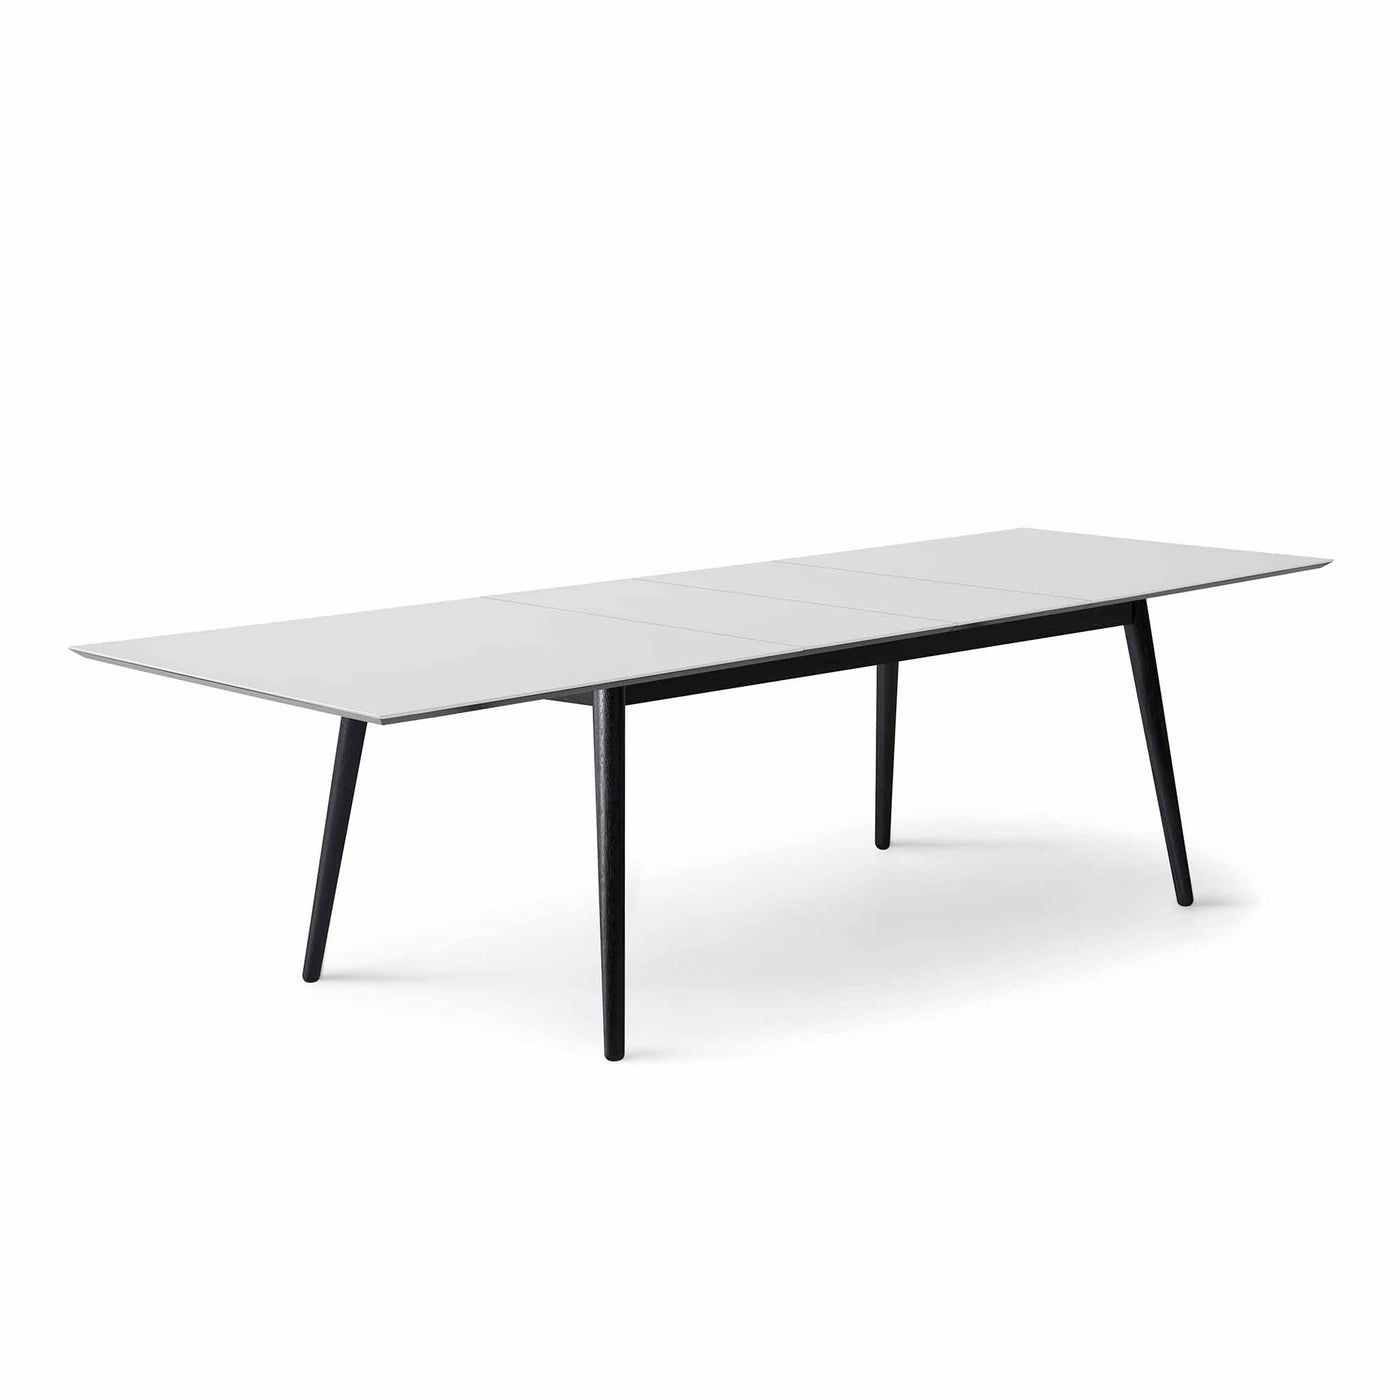 Meza by Hammel Square spisebord med bordplade i hvid laminat og ben i sortbejdset ask.